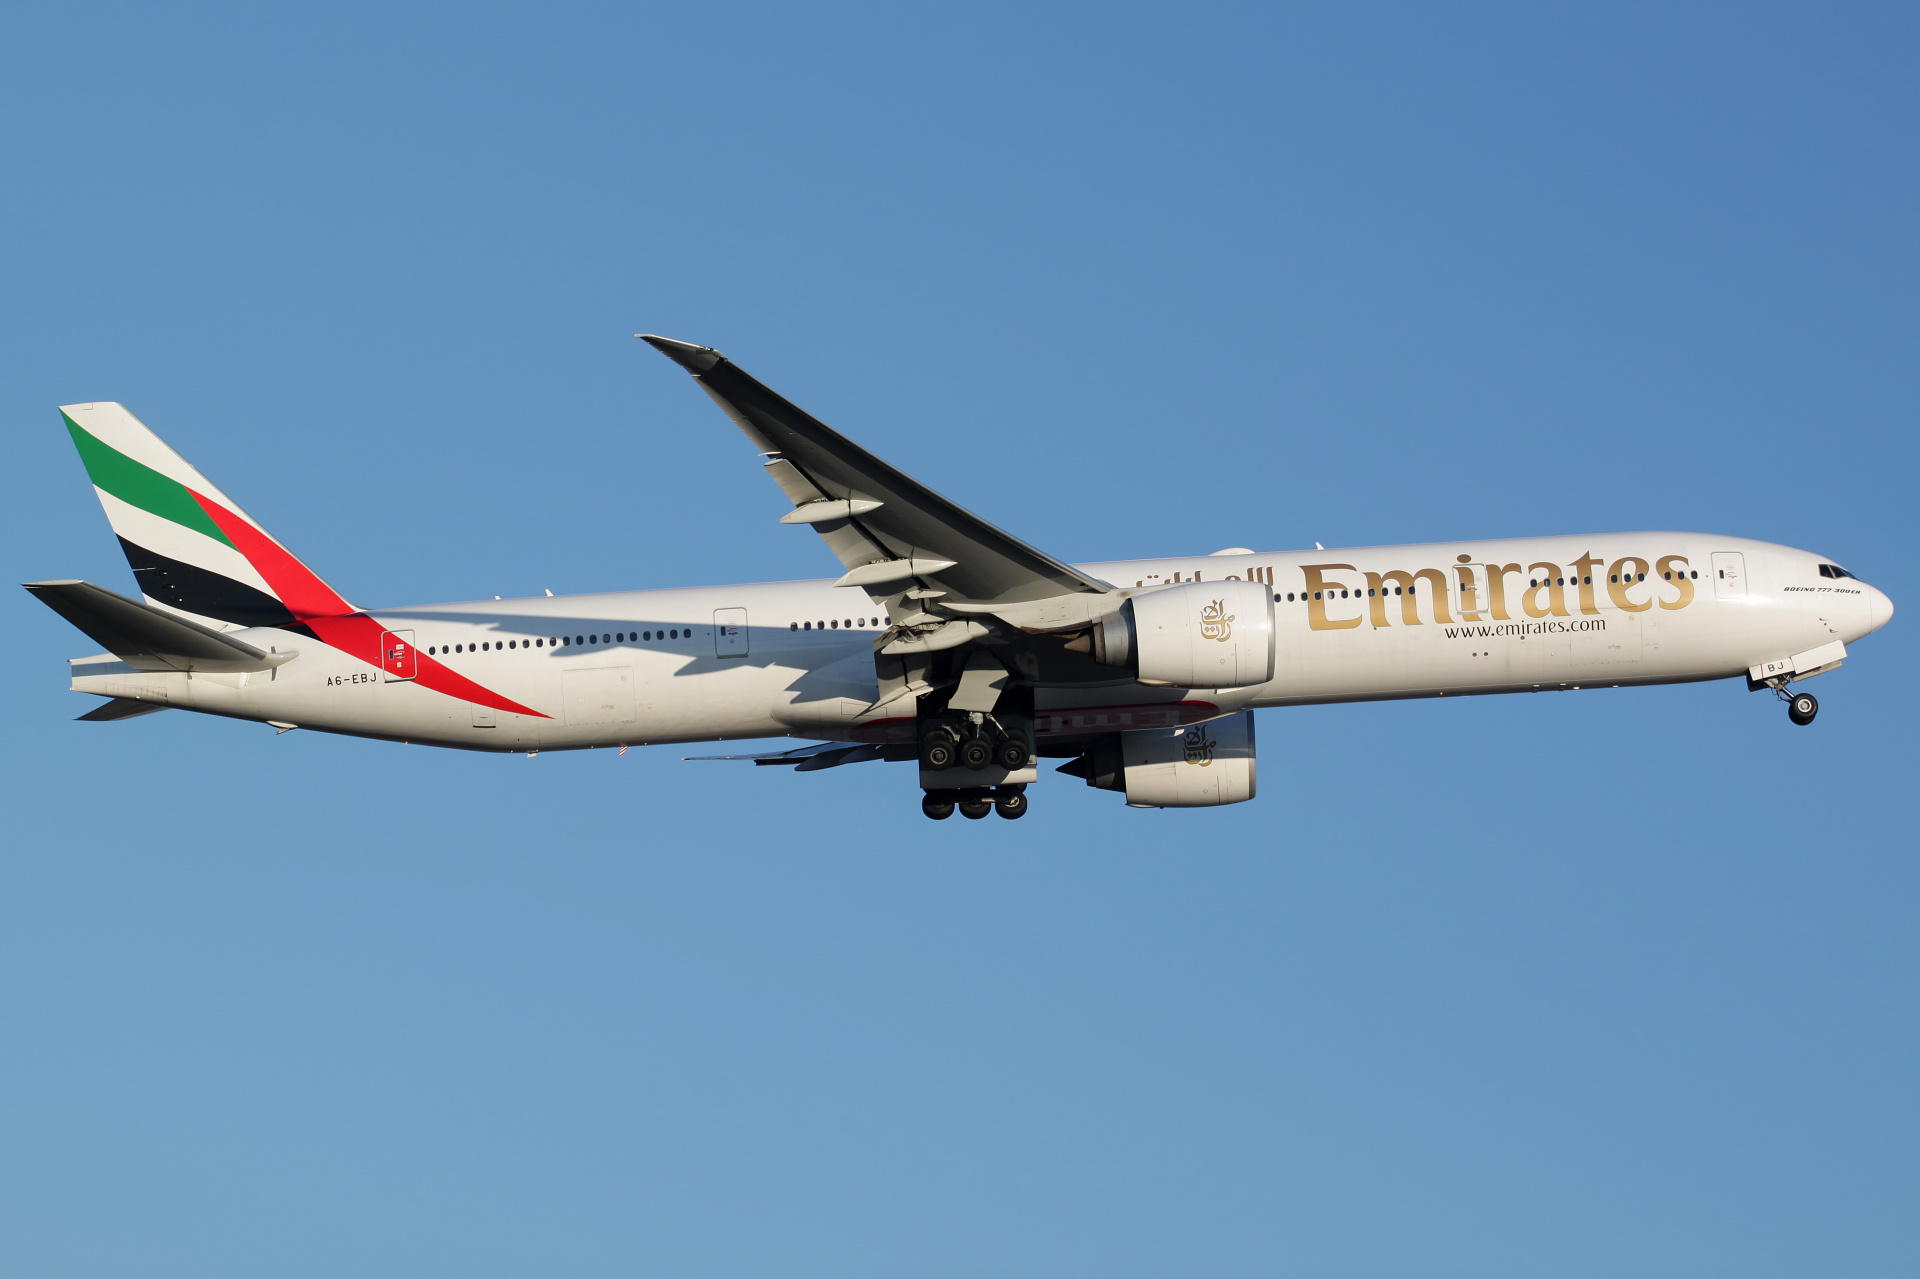 A6-EBJ (Aircraft » EPWA Spotting » Boeing 777-300ER » Emirates)